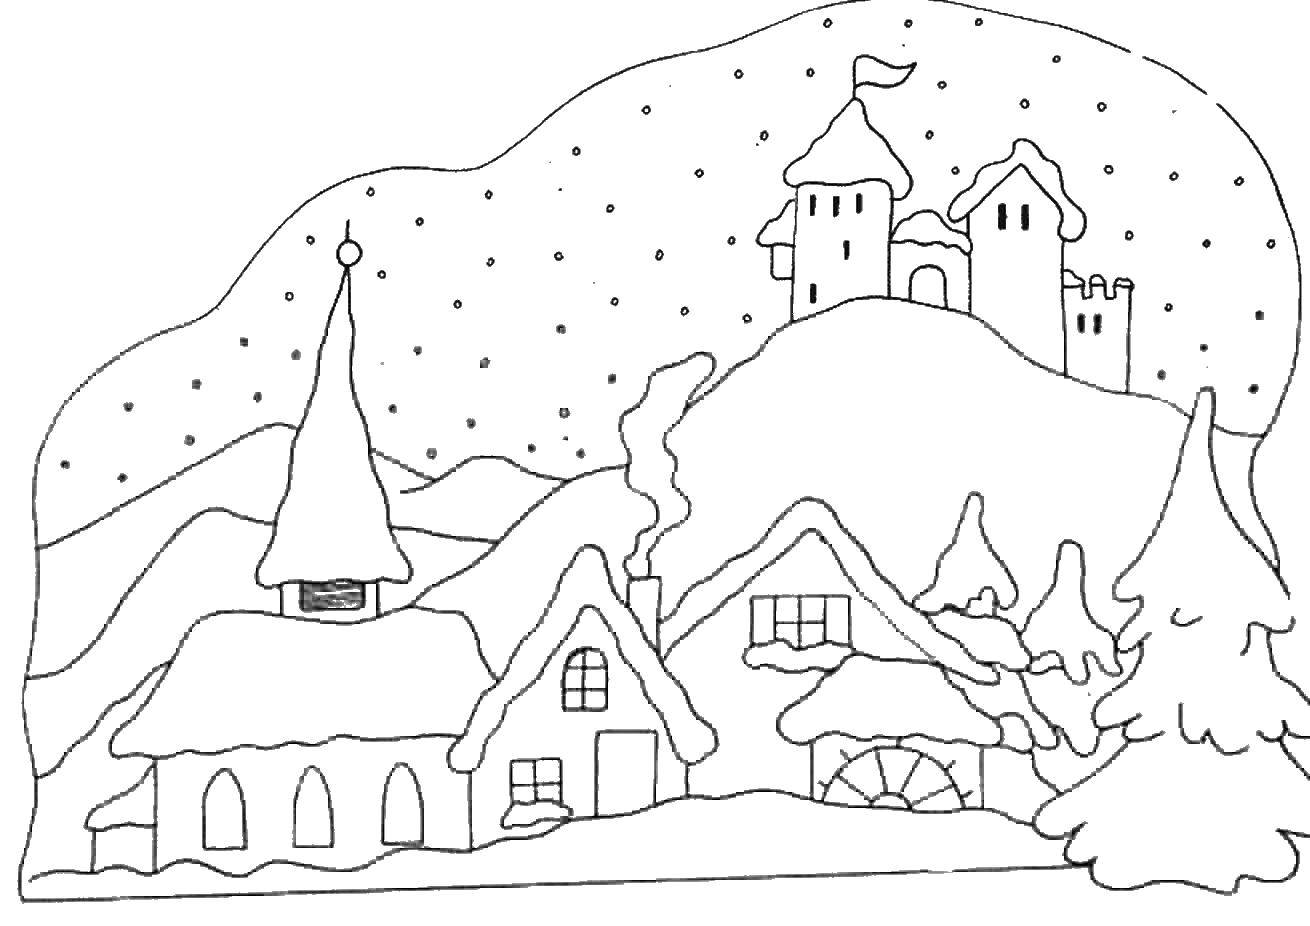 Раскраски для детей Зима, зимушка раскраски для школьников  Зимний городок покрыт снегом